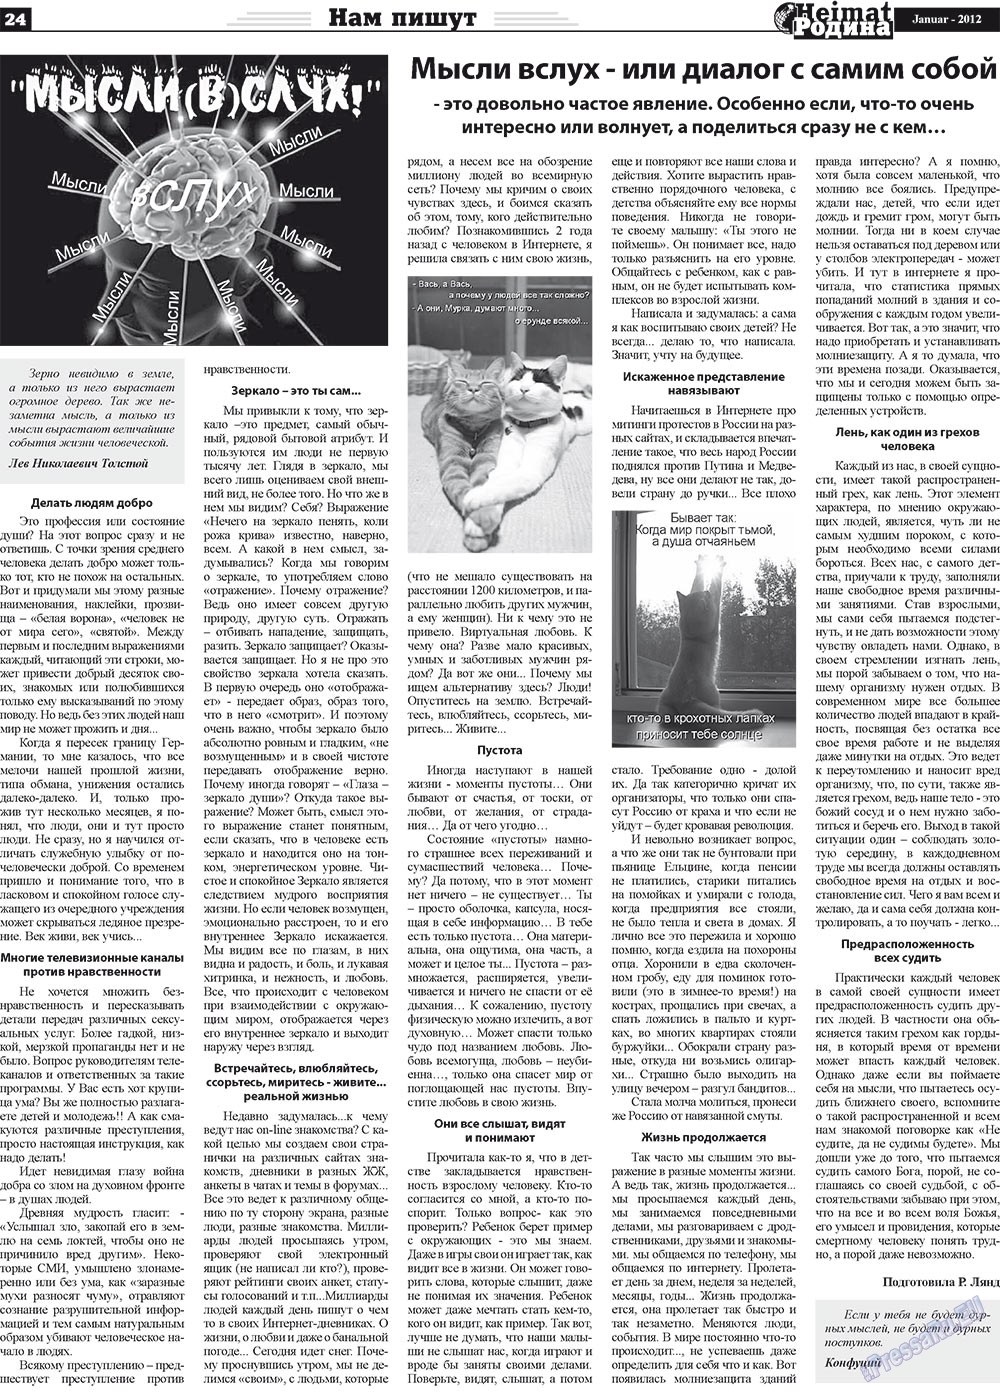 Heimat-Родина (газета). 2012 год, номер 1, стр. 24